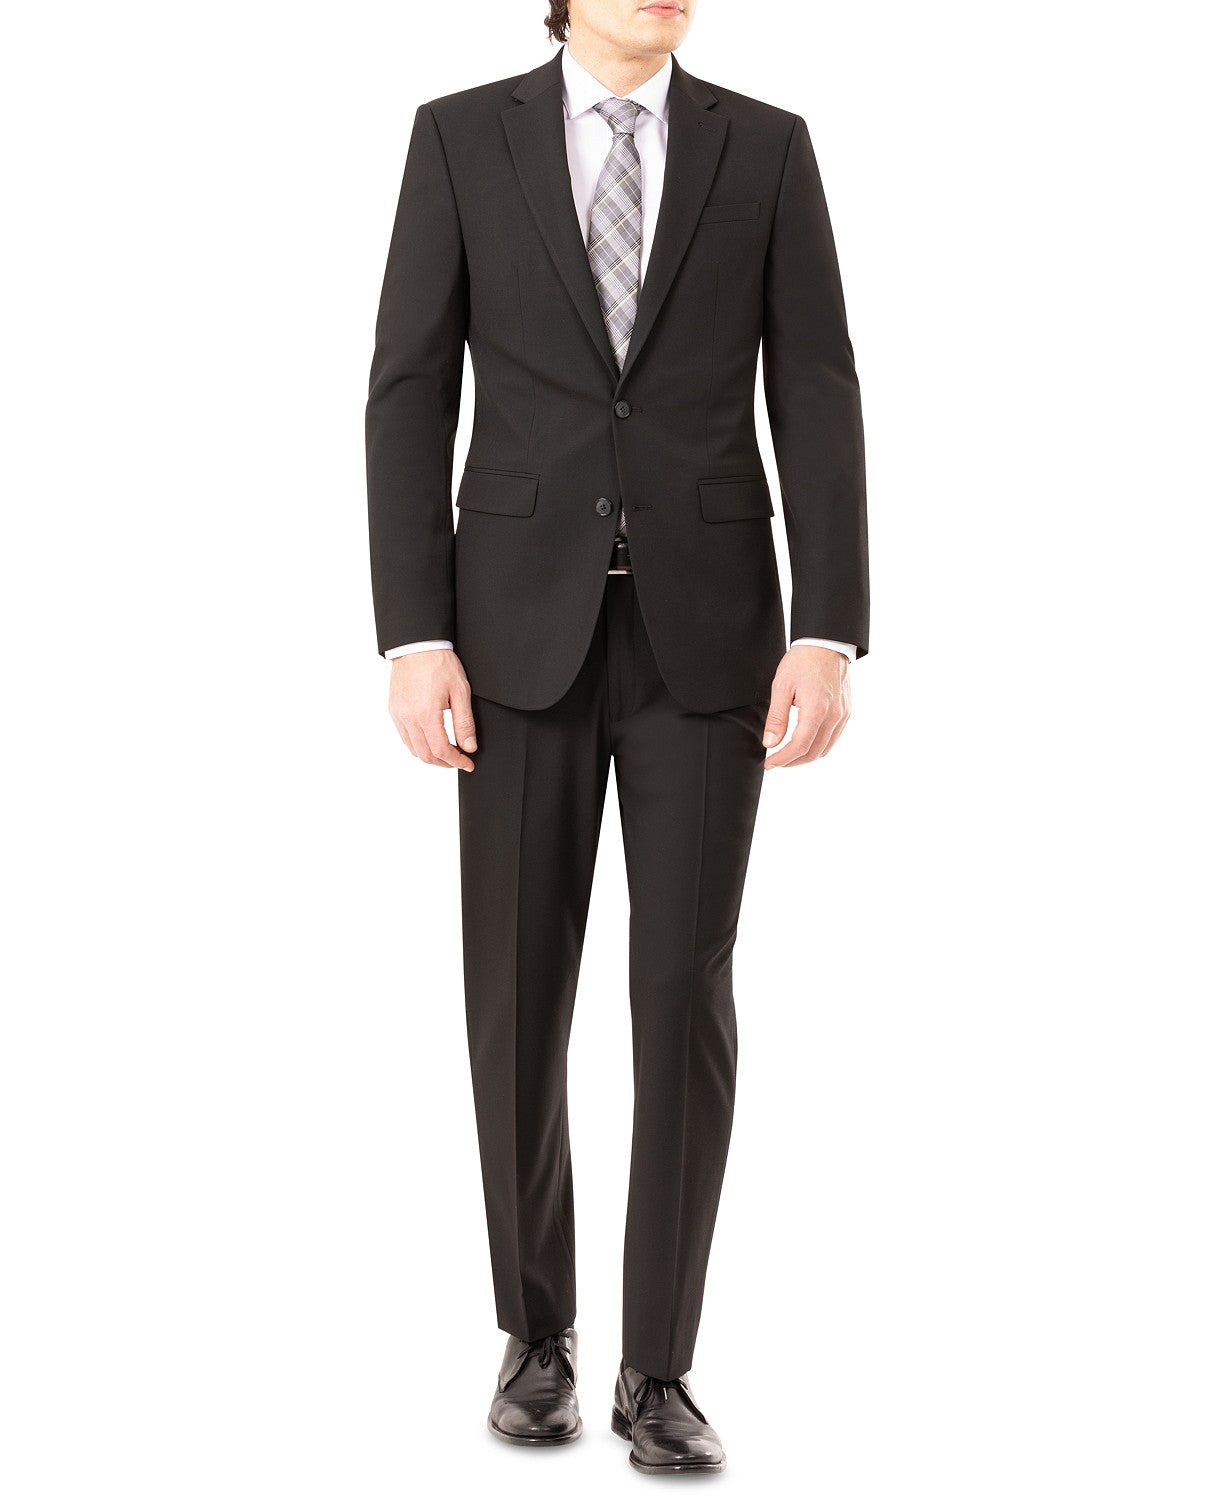 IZOD Men's Classic-Fit Suit Jacket Black 46L JACKET ONLY